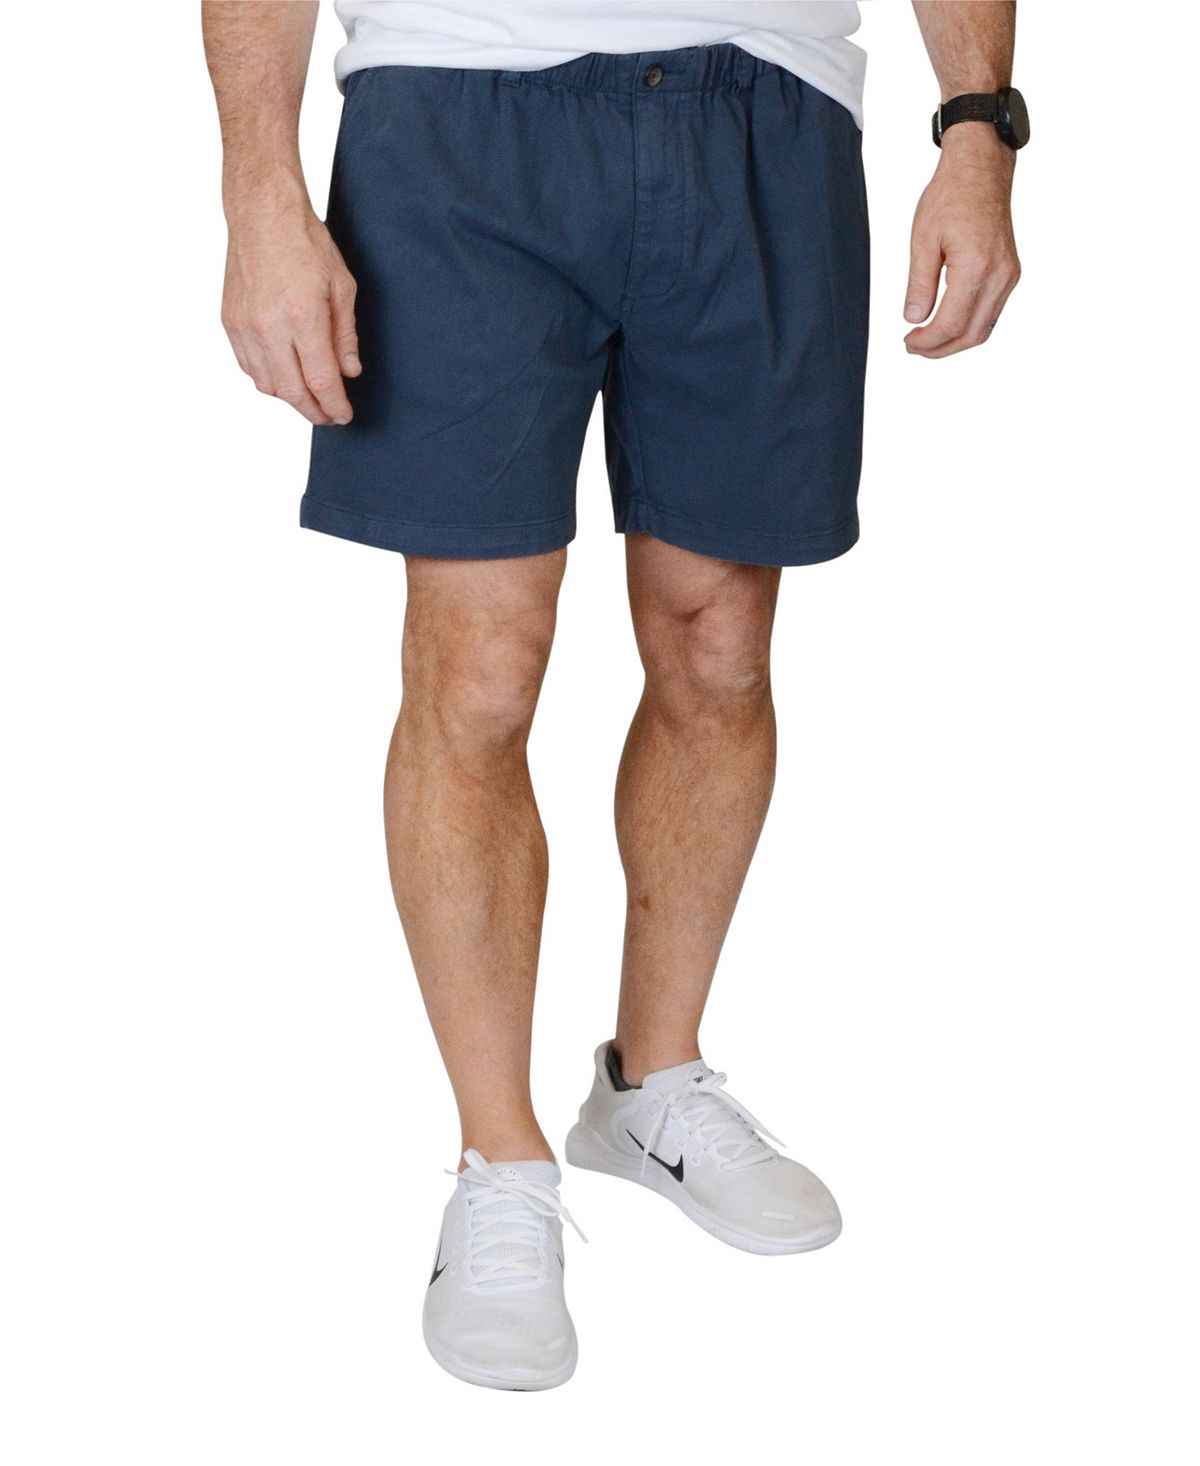 Мужские шорты с эластичной резинкой на талии 5,5 дюйма без застежки Vintage 1946, синий